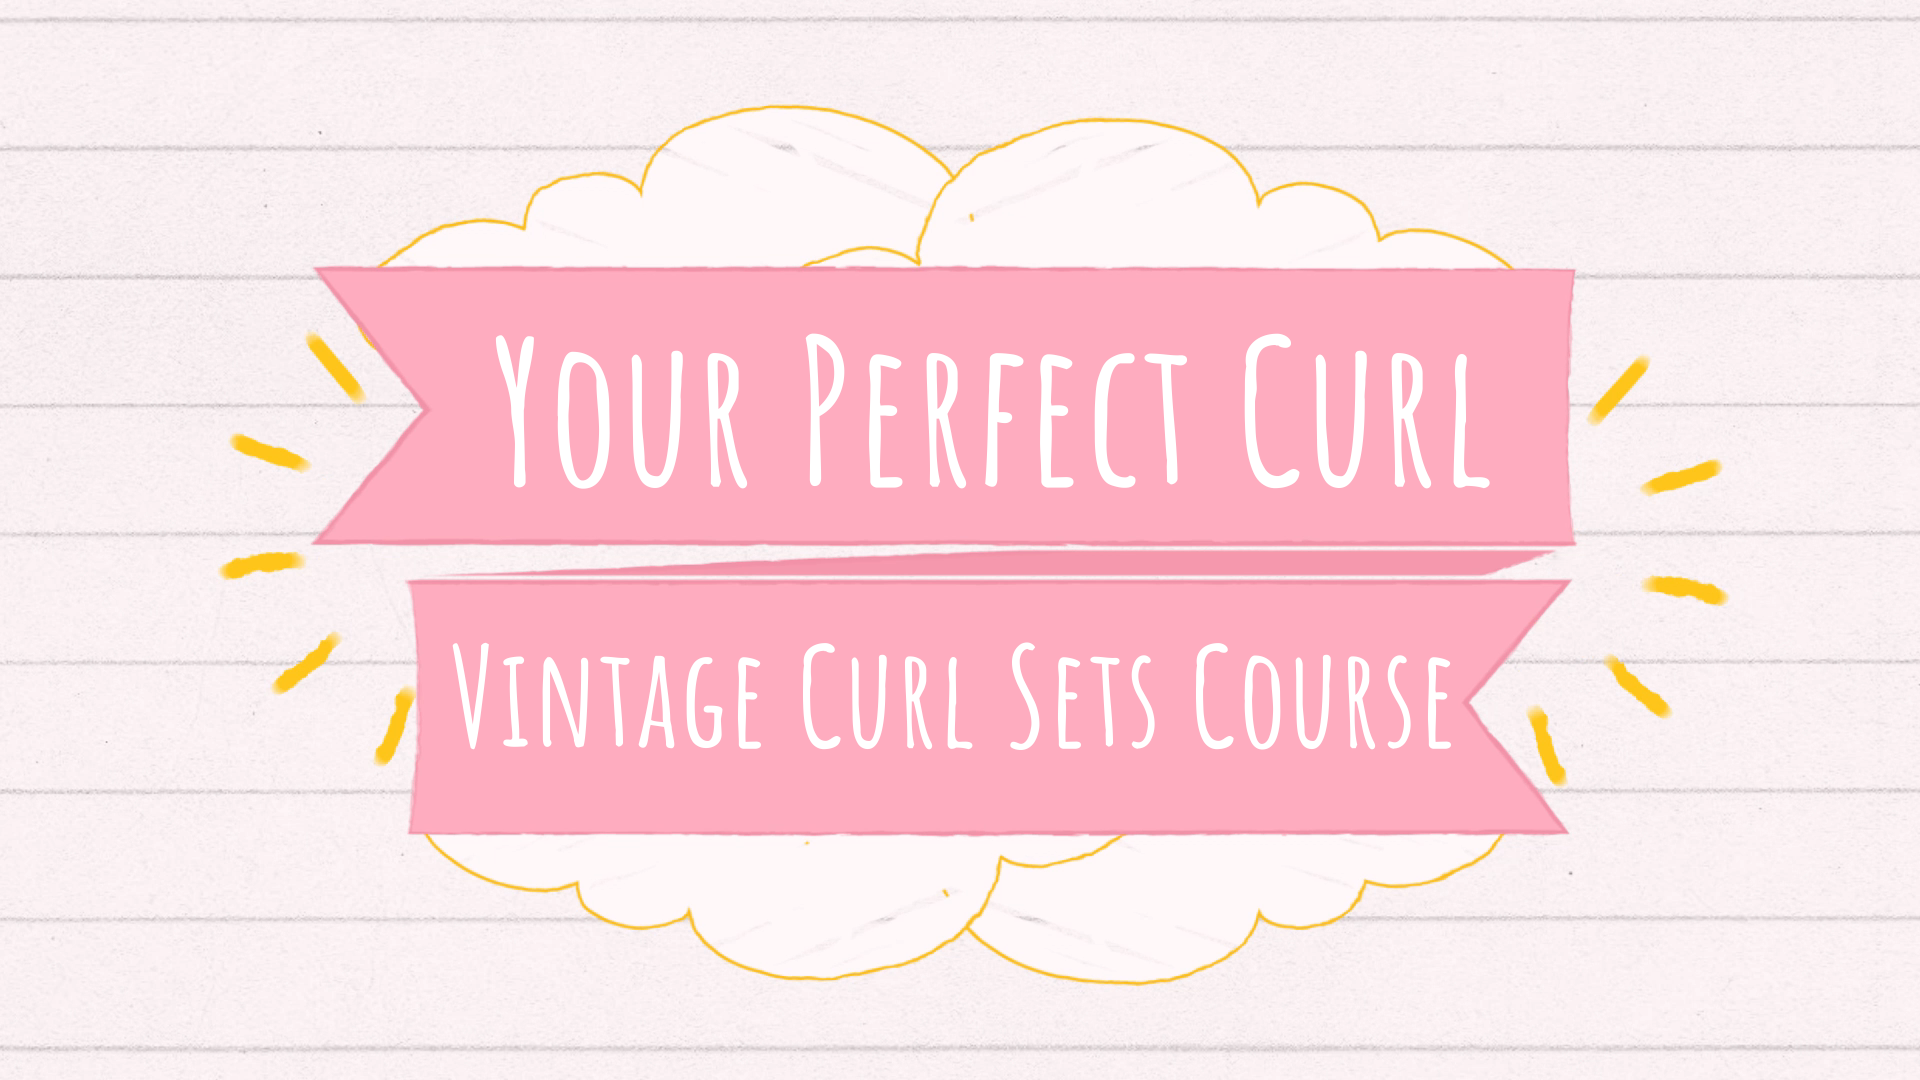  vintage curl sets online course